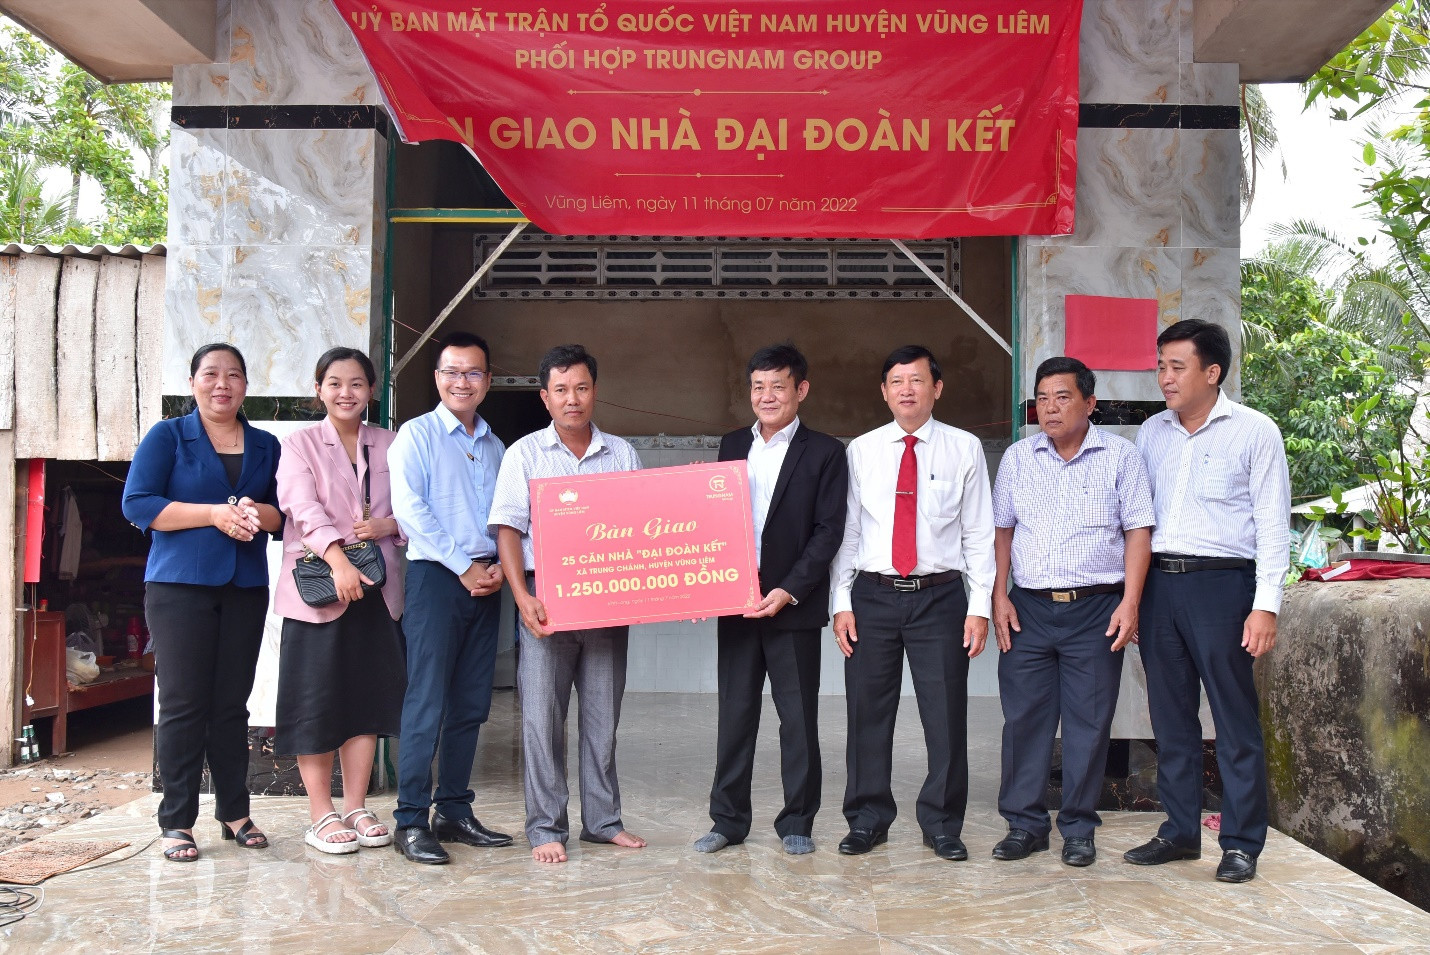 25 căn nhà đã được Trungnam Group hoàn thiện và trao tặng cho người dân.